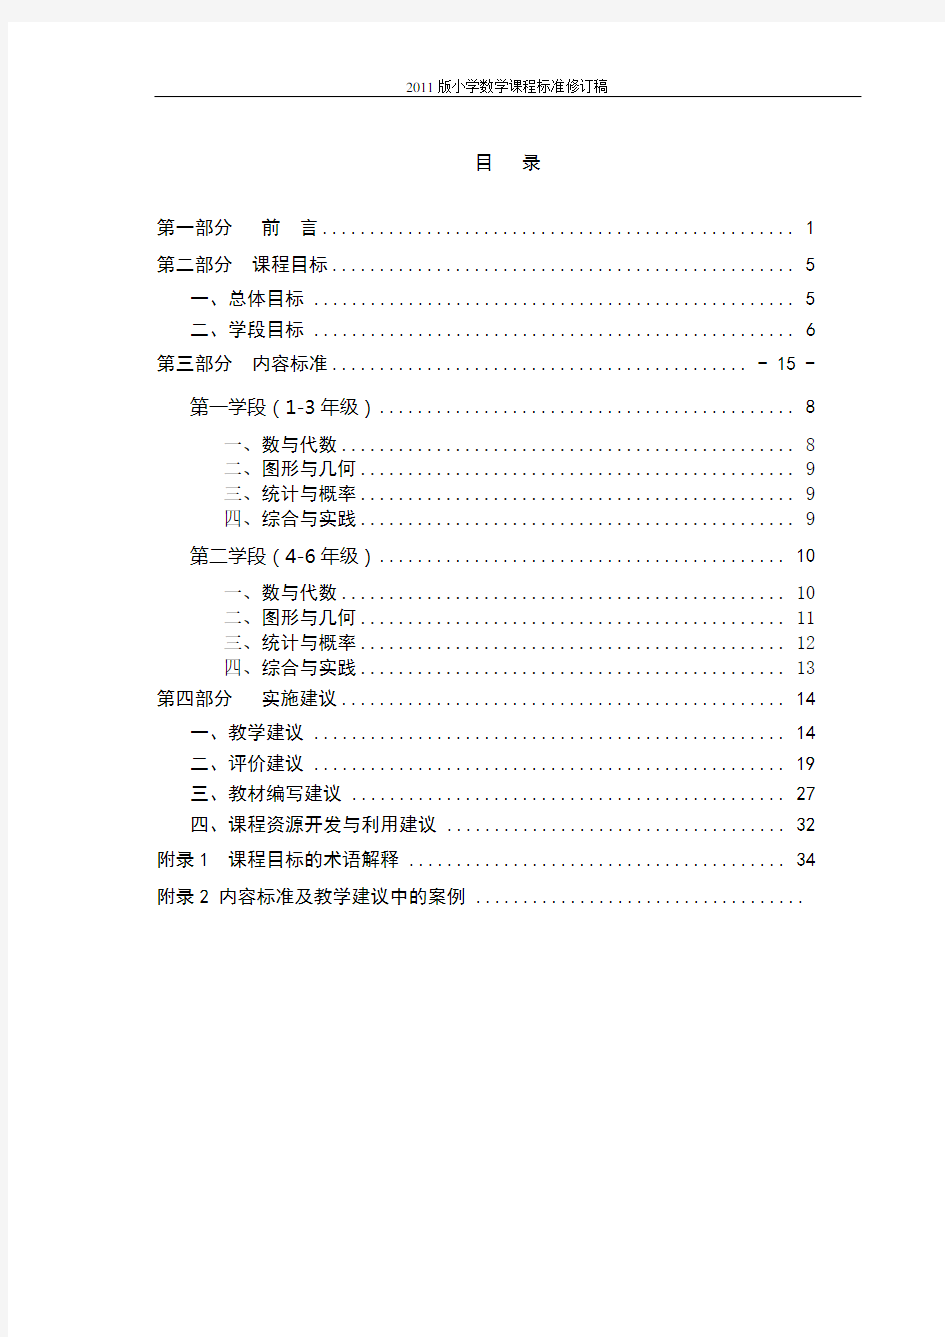 2019版小学数学课程标准修订稿(最新)